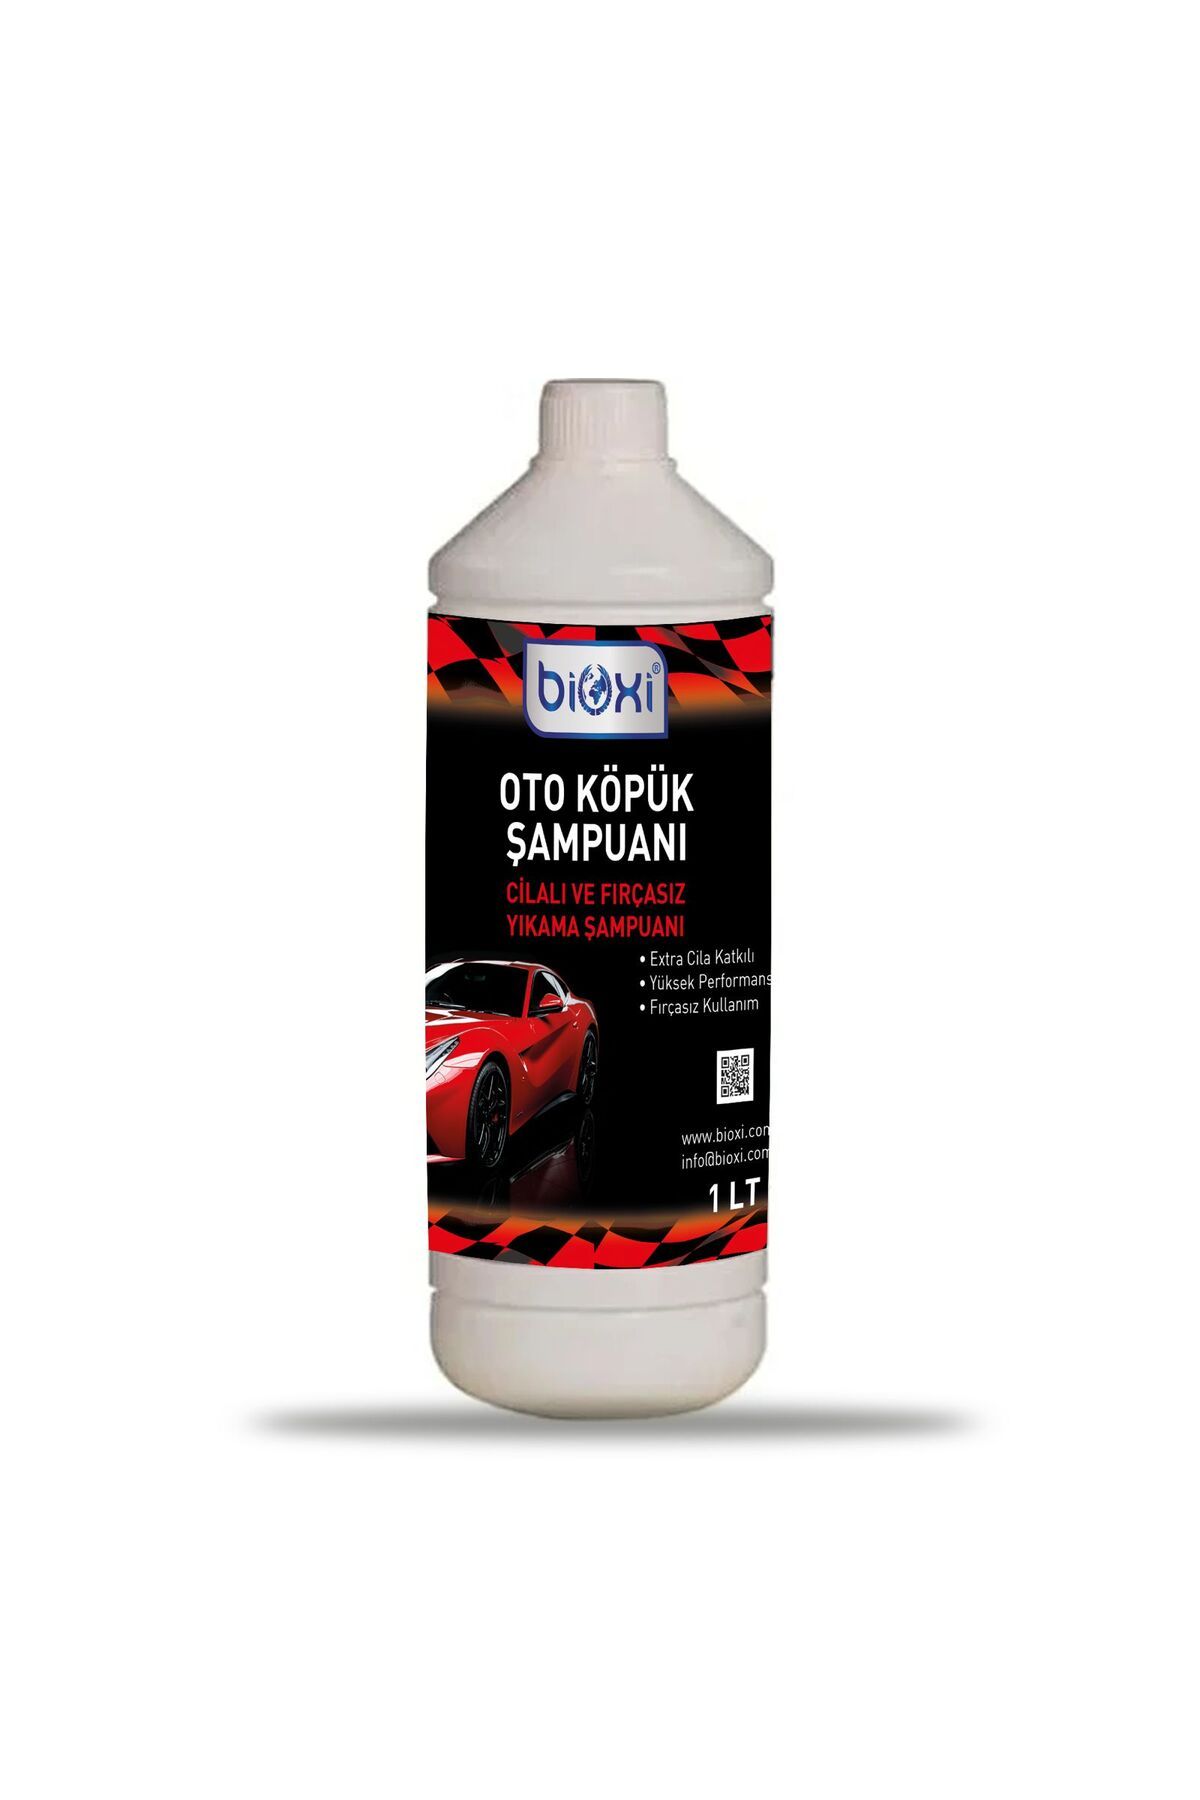 Bioxi Oto Köpük Şampuanı / Cilalı Ve Fırçasız Yıkama Şampuanı 1 Lt.